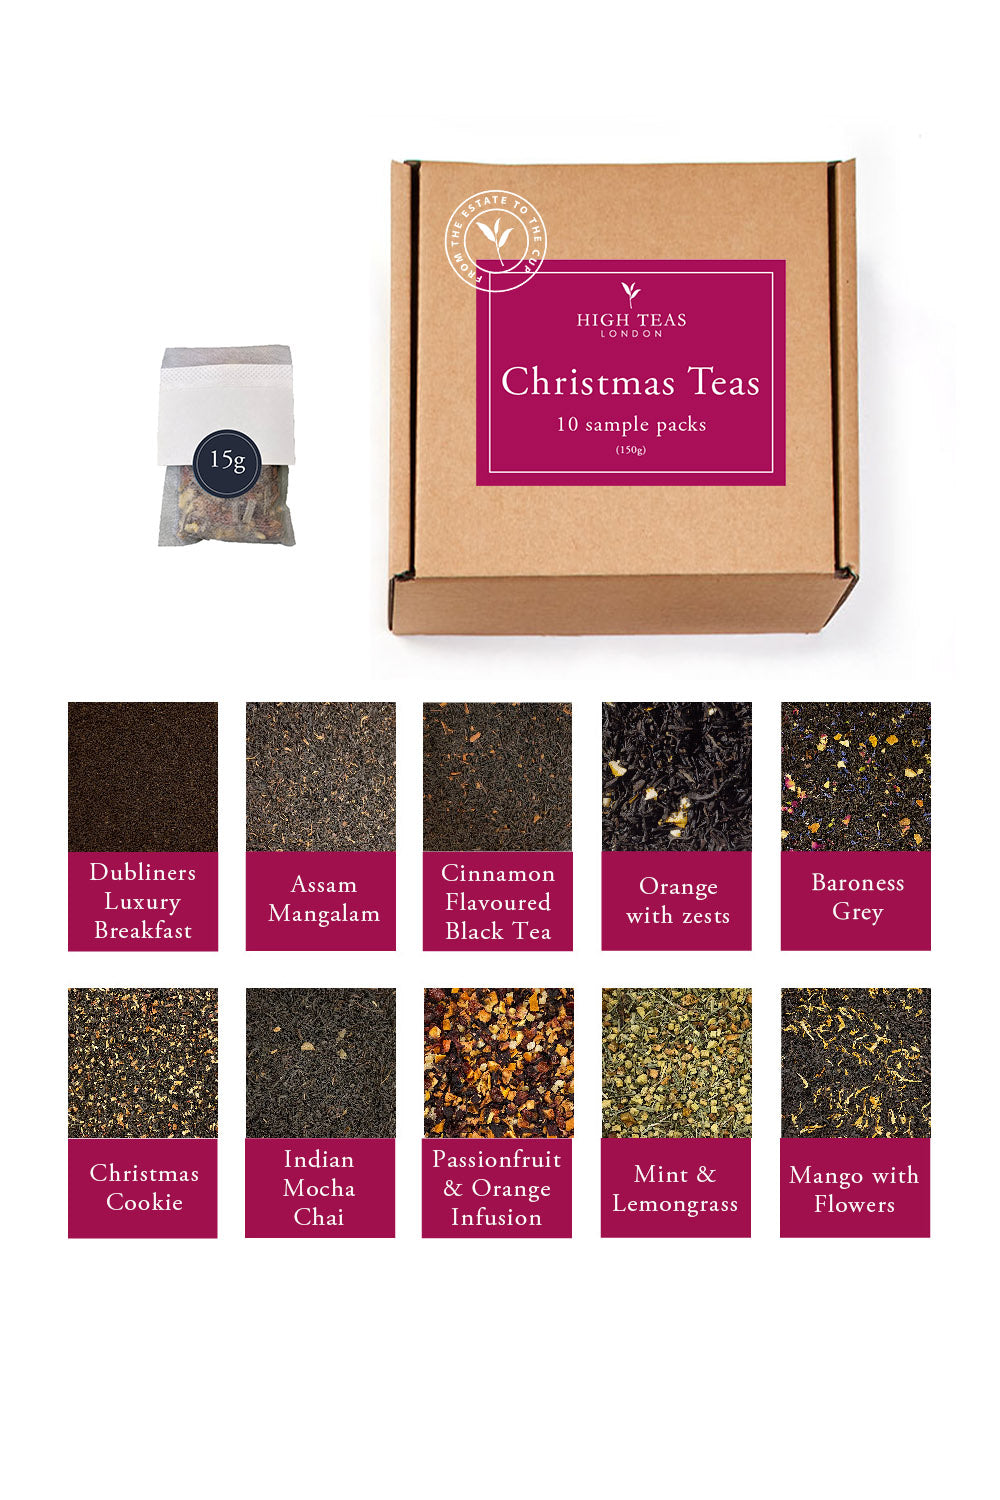 Chistmas Tea Sample Box (10 x 15g)-Loose Leaf Tea-High Teas